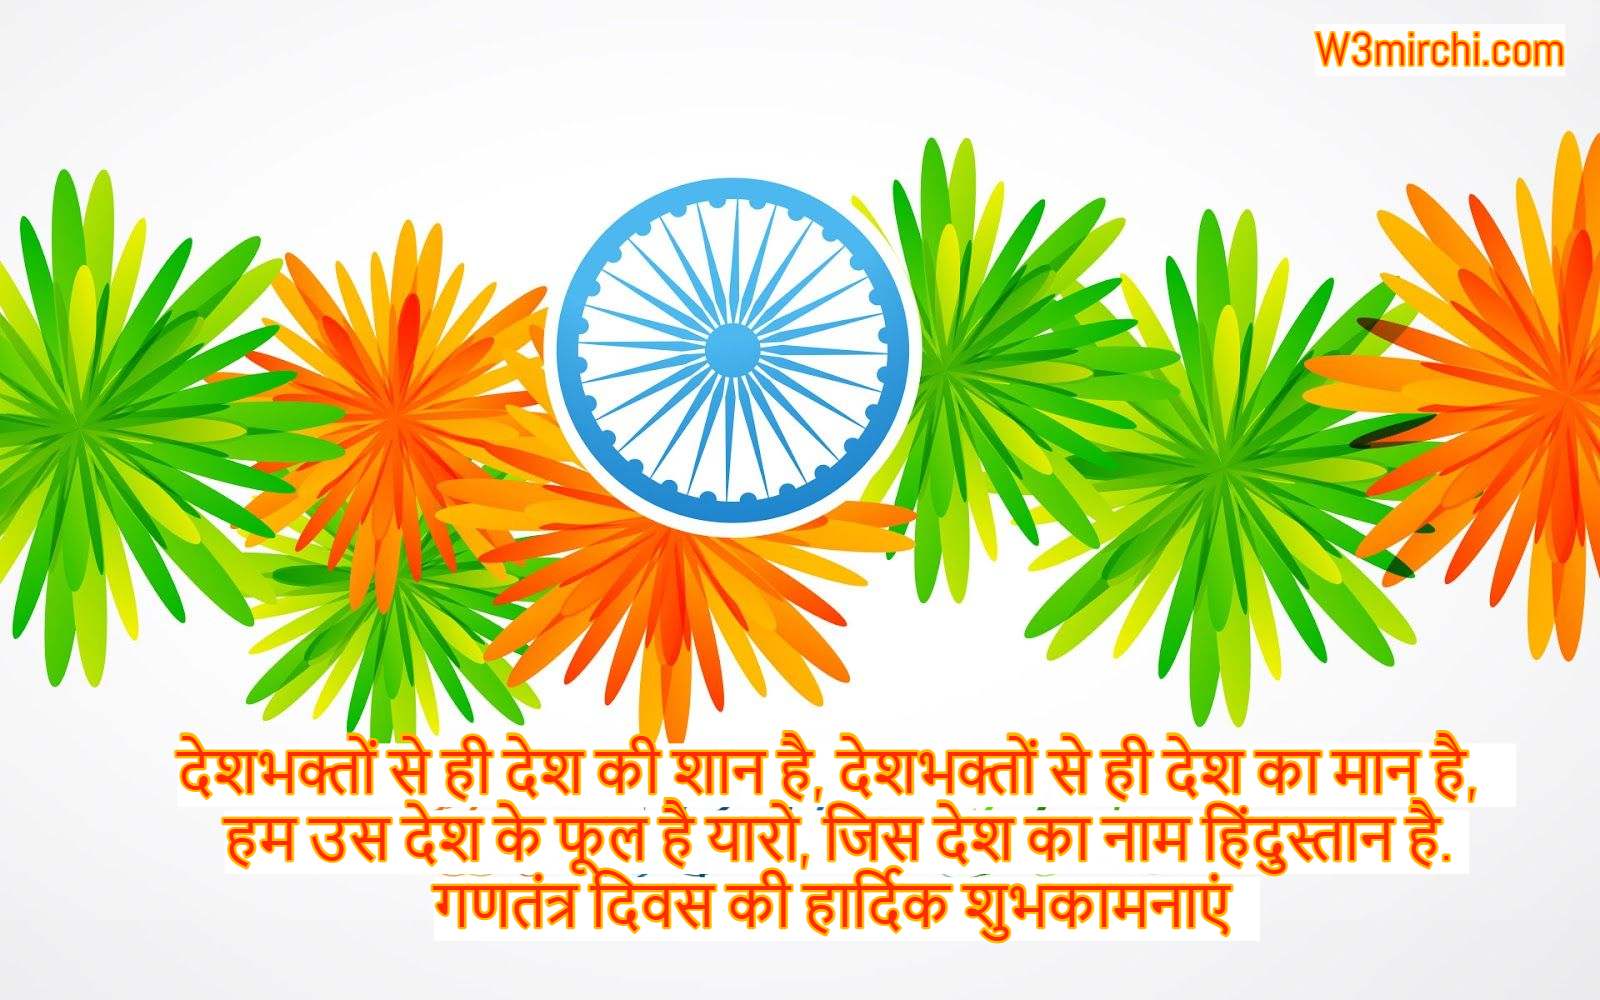 गणतंत्र दिवस की हार्दिक शुभकामनाएं